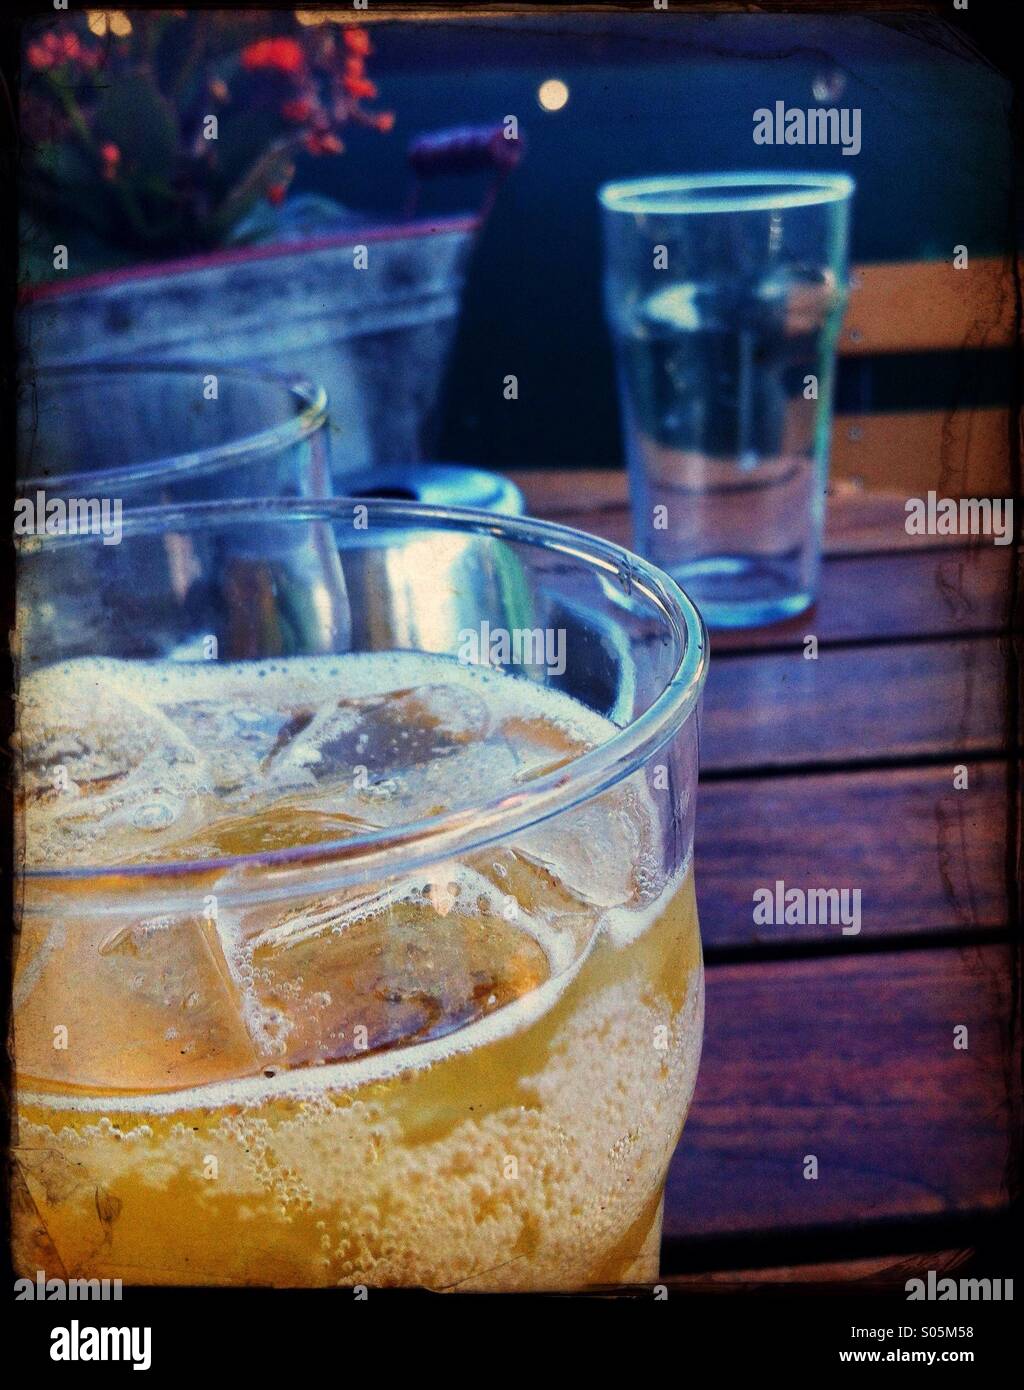 Un bar tavola con un bicchiere pieno di sidro di mele e un bicchiere vuoto Foto Stock